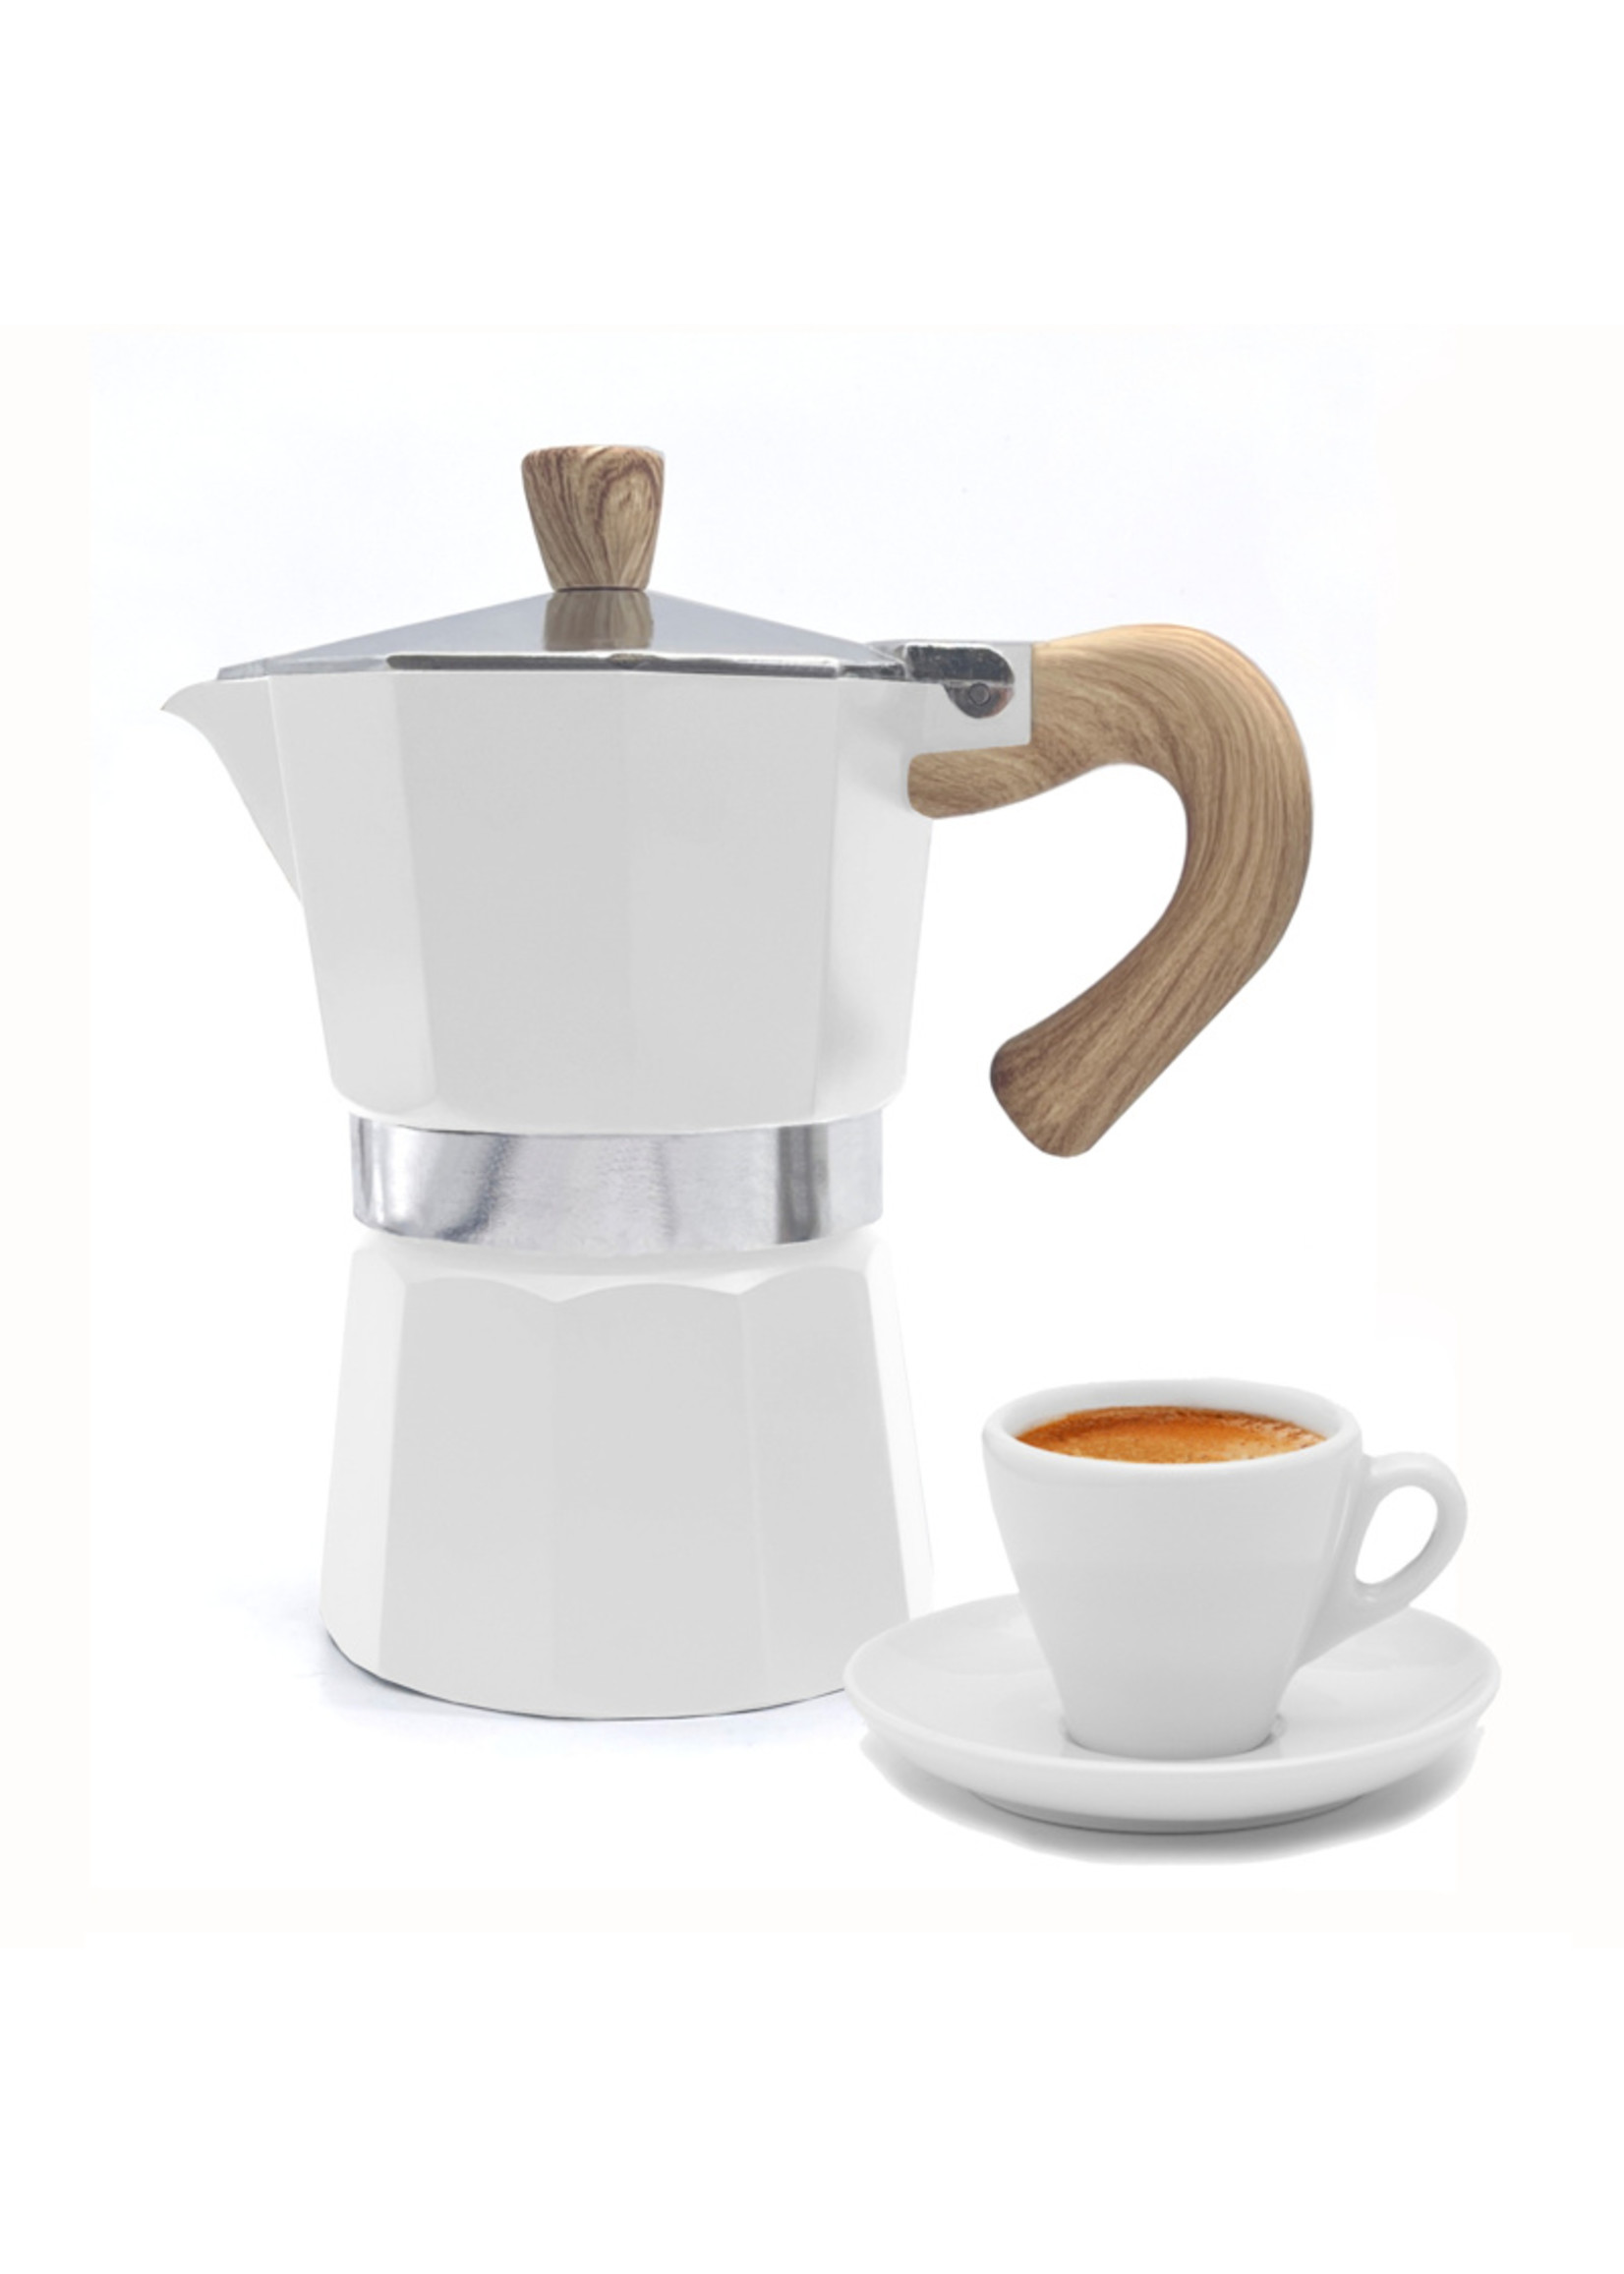 Danesco 3-cup Stovetop Espresso Maker, White